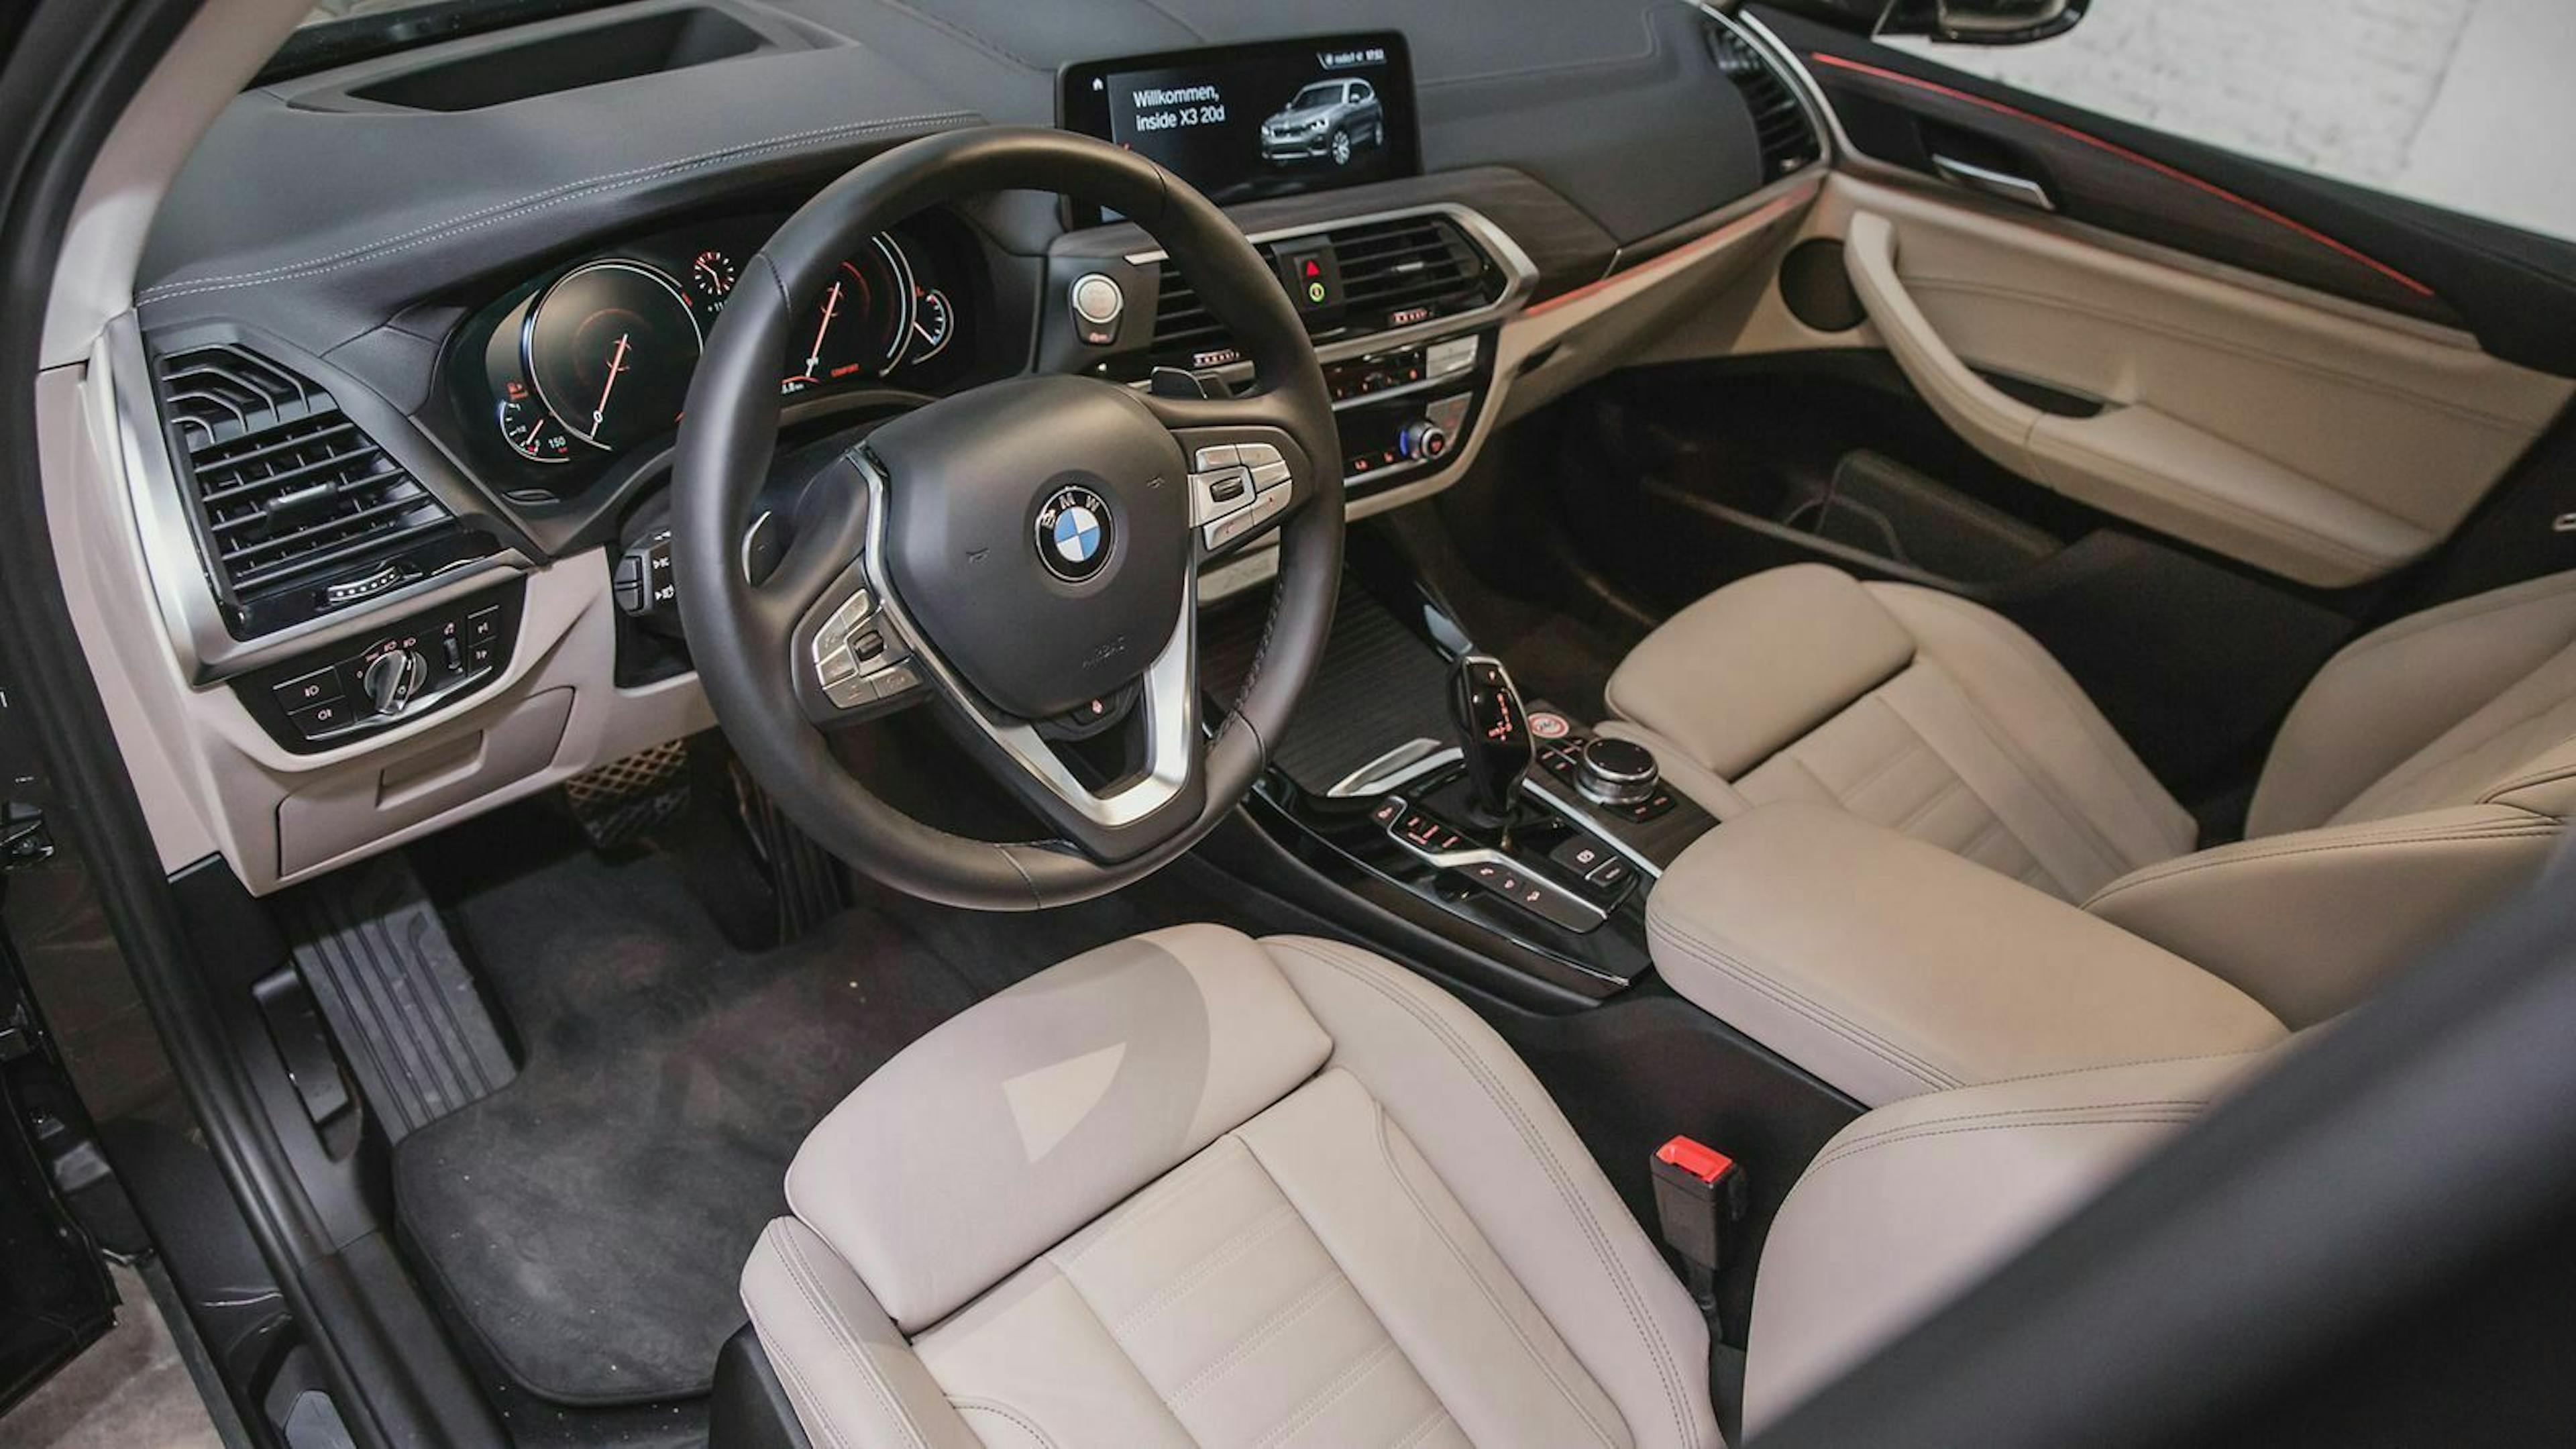 Für den X3 bietet BMW nur Apple CarPlay an. Android Auto steht nicht zur Verfügung